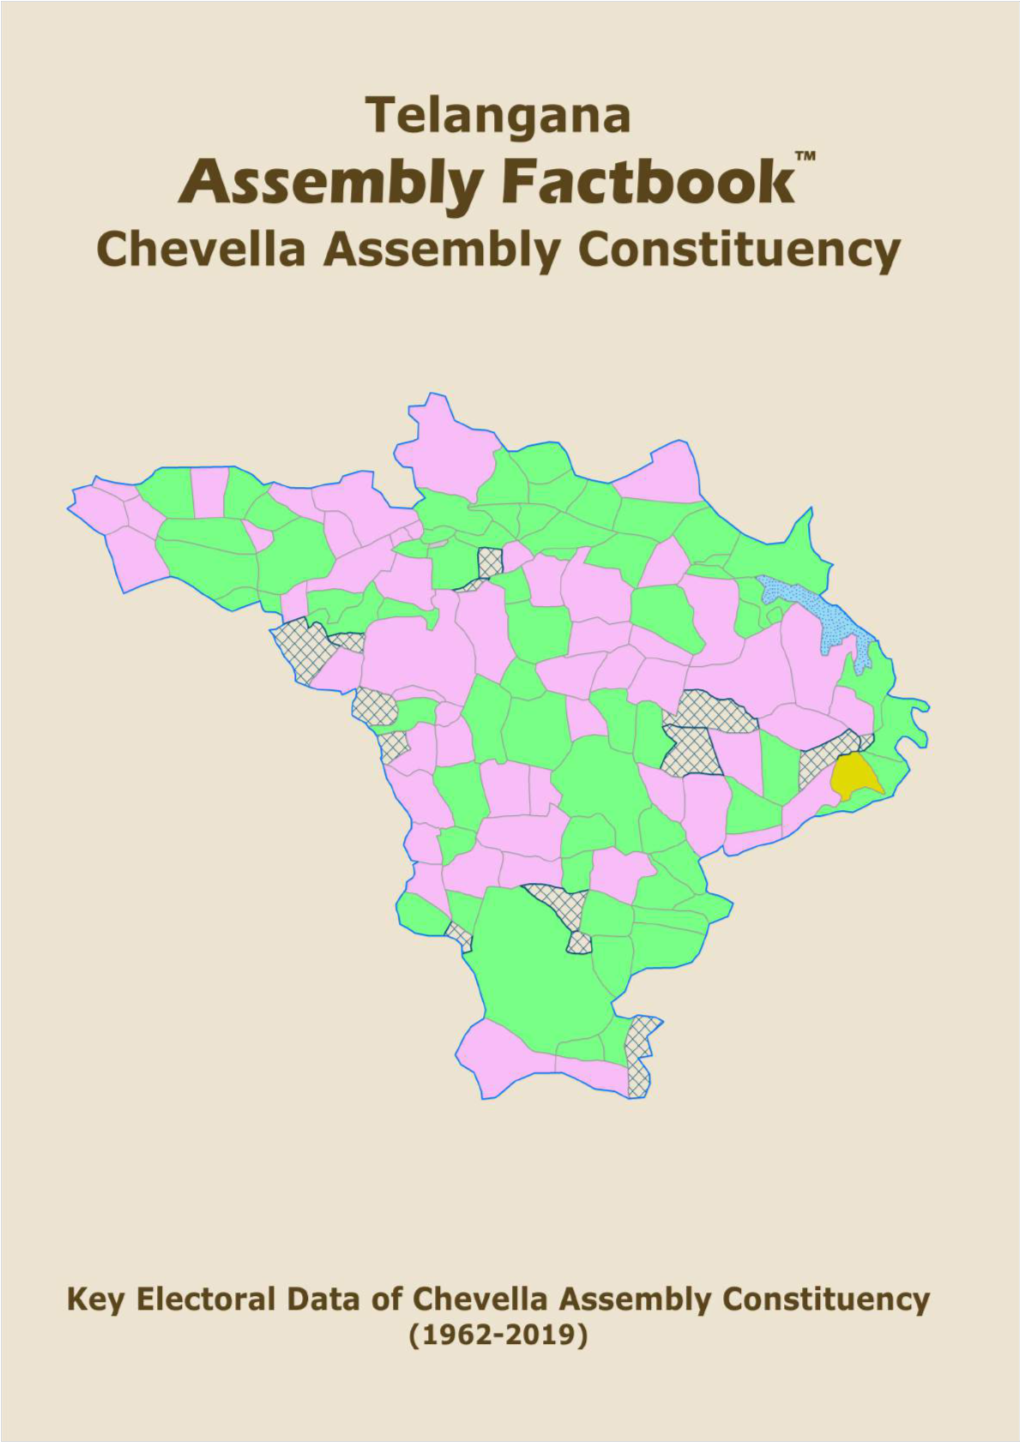 Chevella Assembly Telangana Factbook